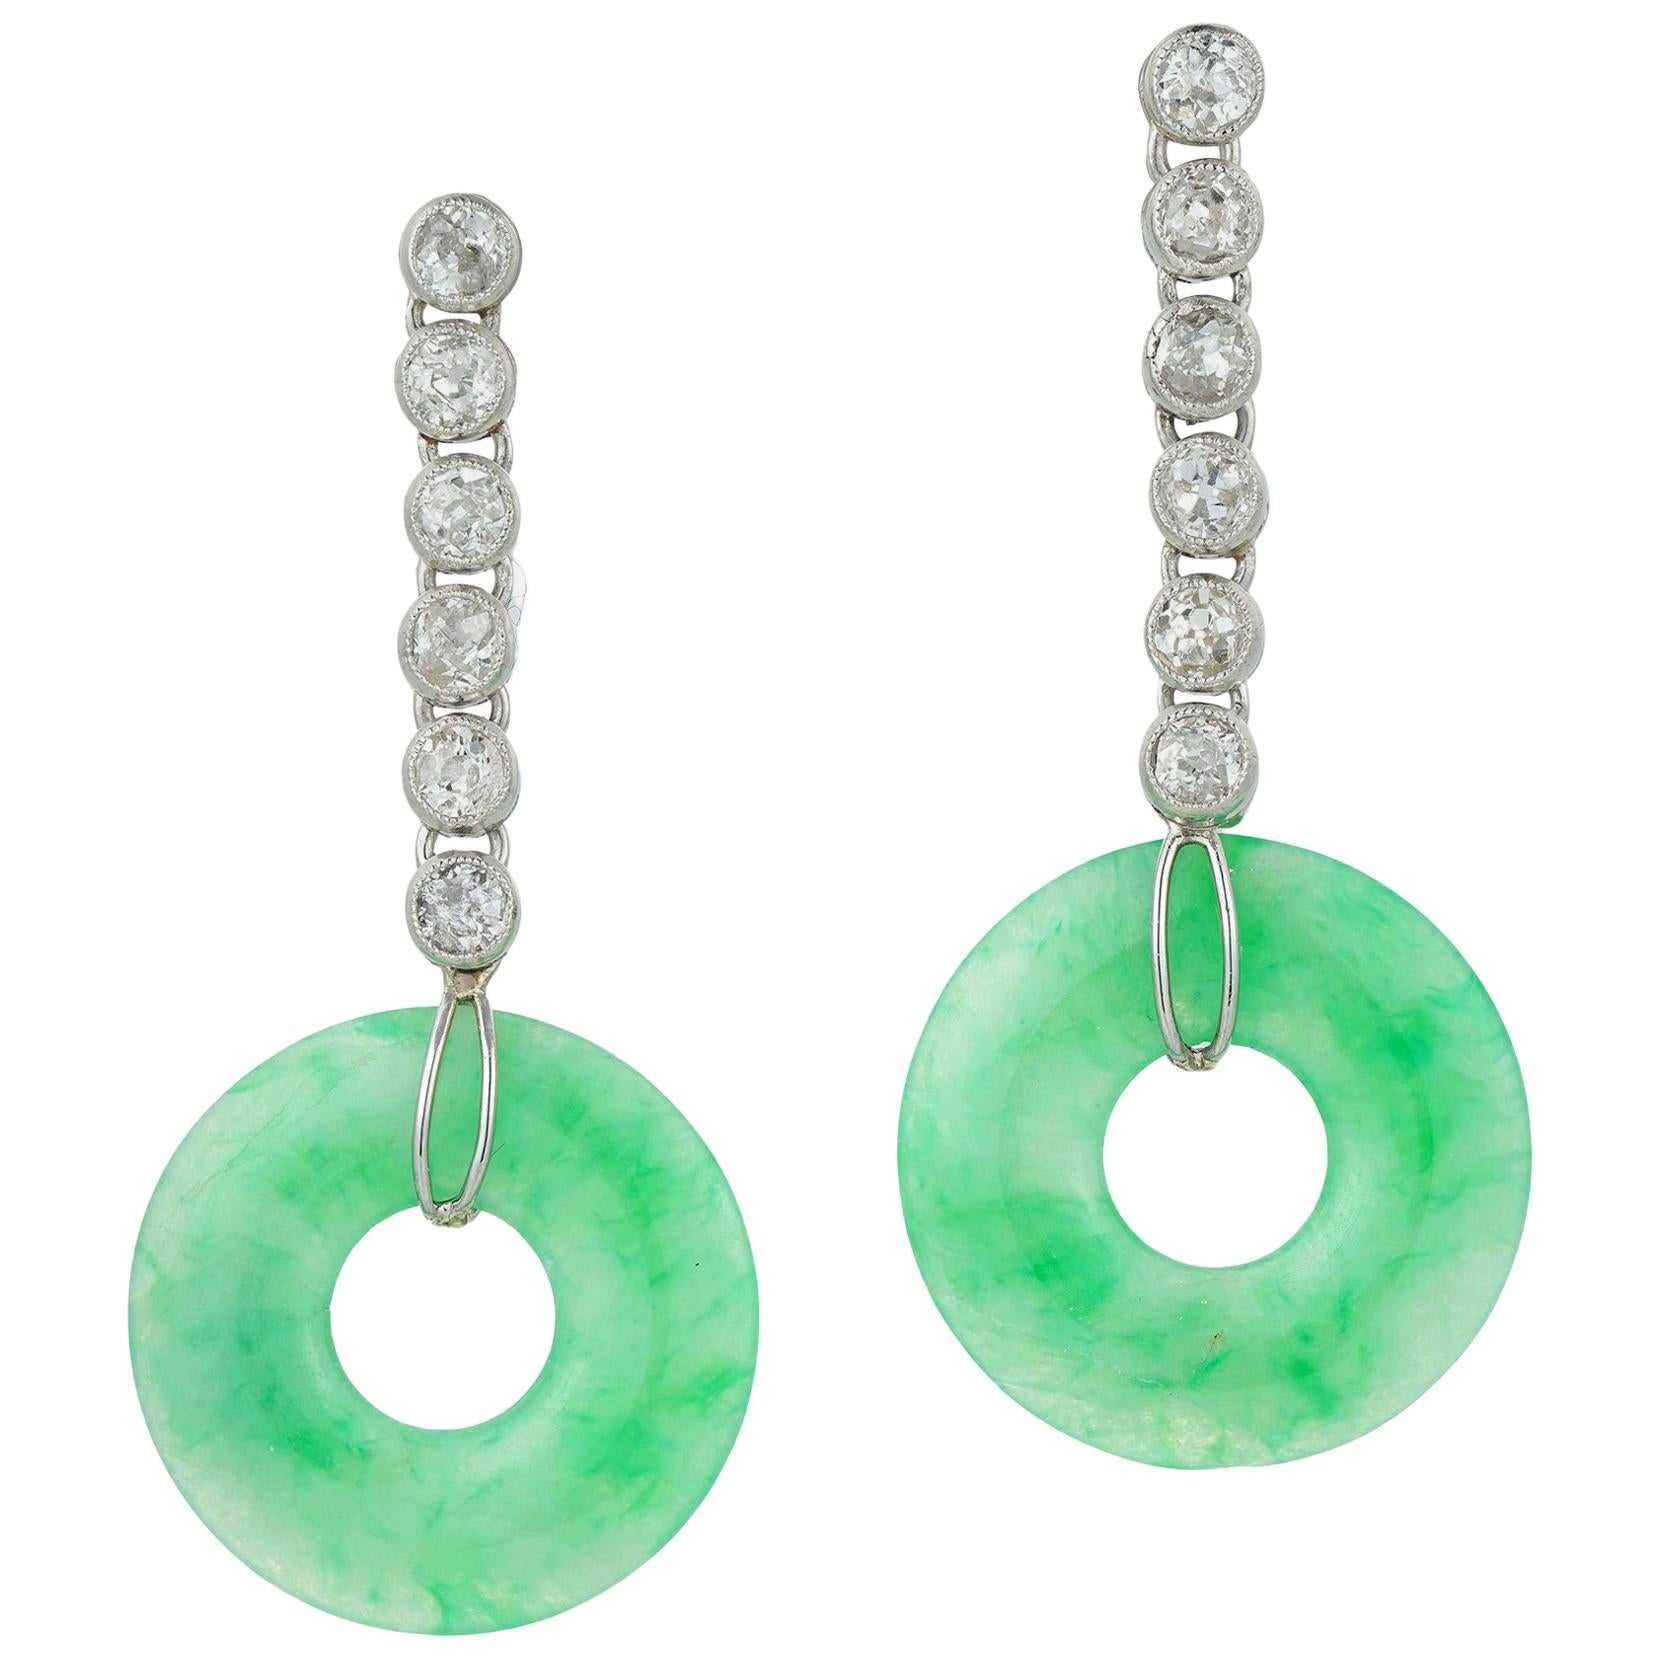 Pair of Jade and Diamond Drop Earrings